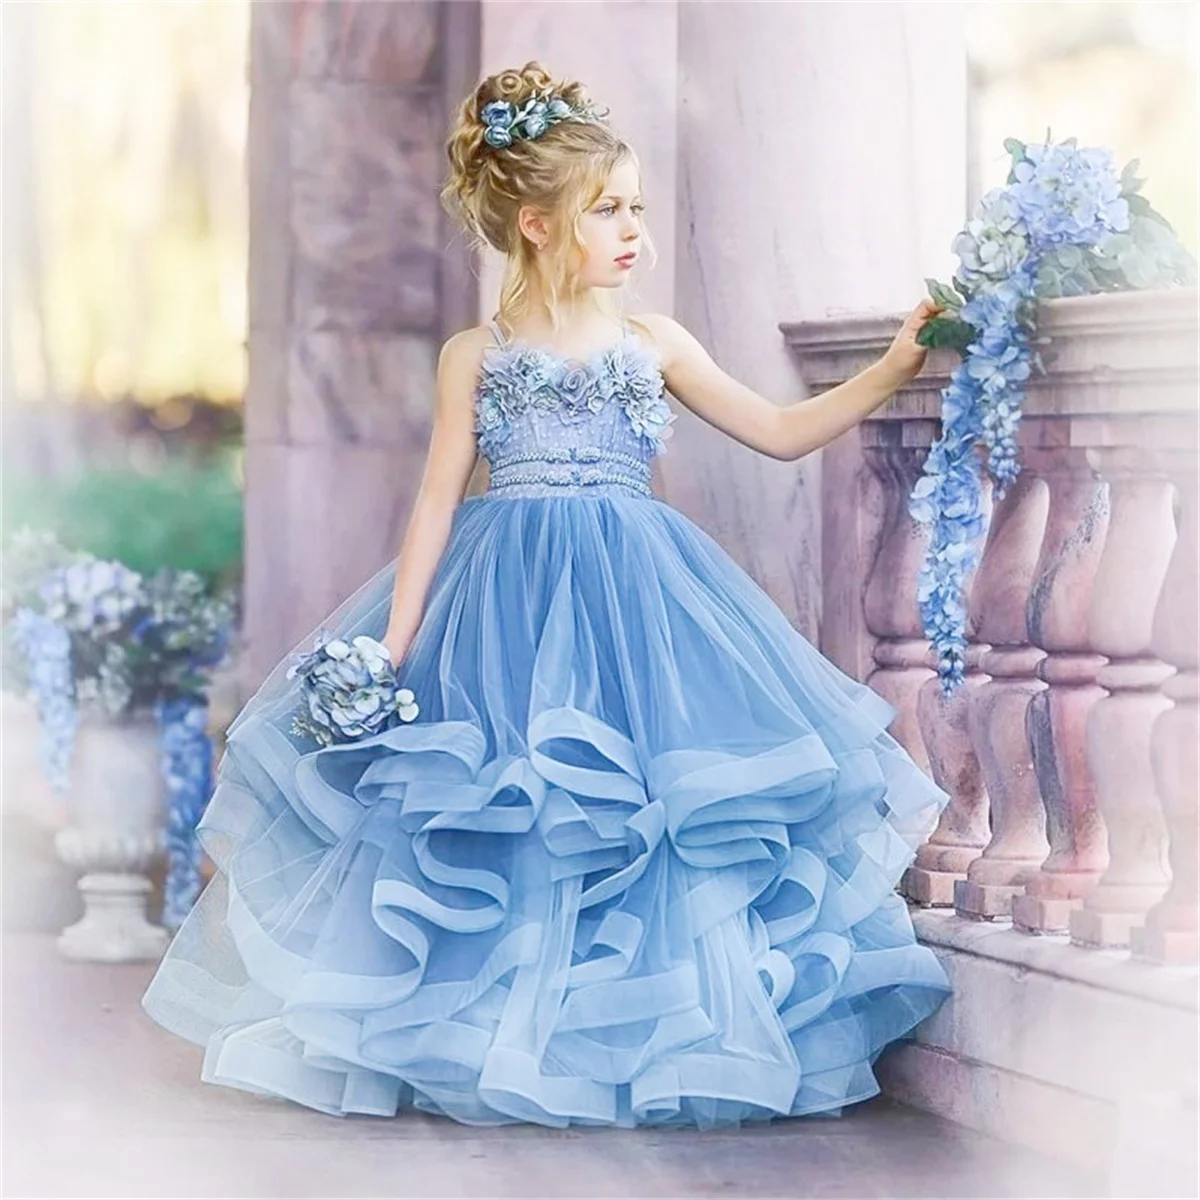 

Fluffy Tulle Long Sleeveless Decal Flower Girl Dress Wedding Little Flower Children's Holy Communion Celebration Dress